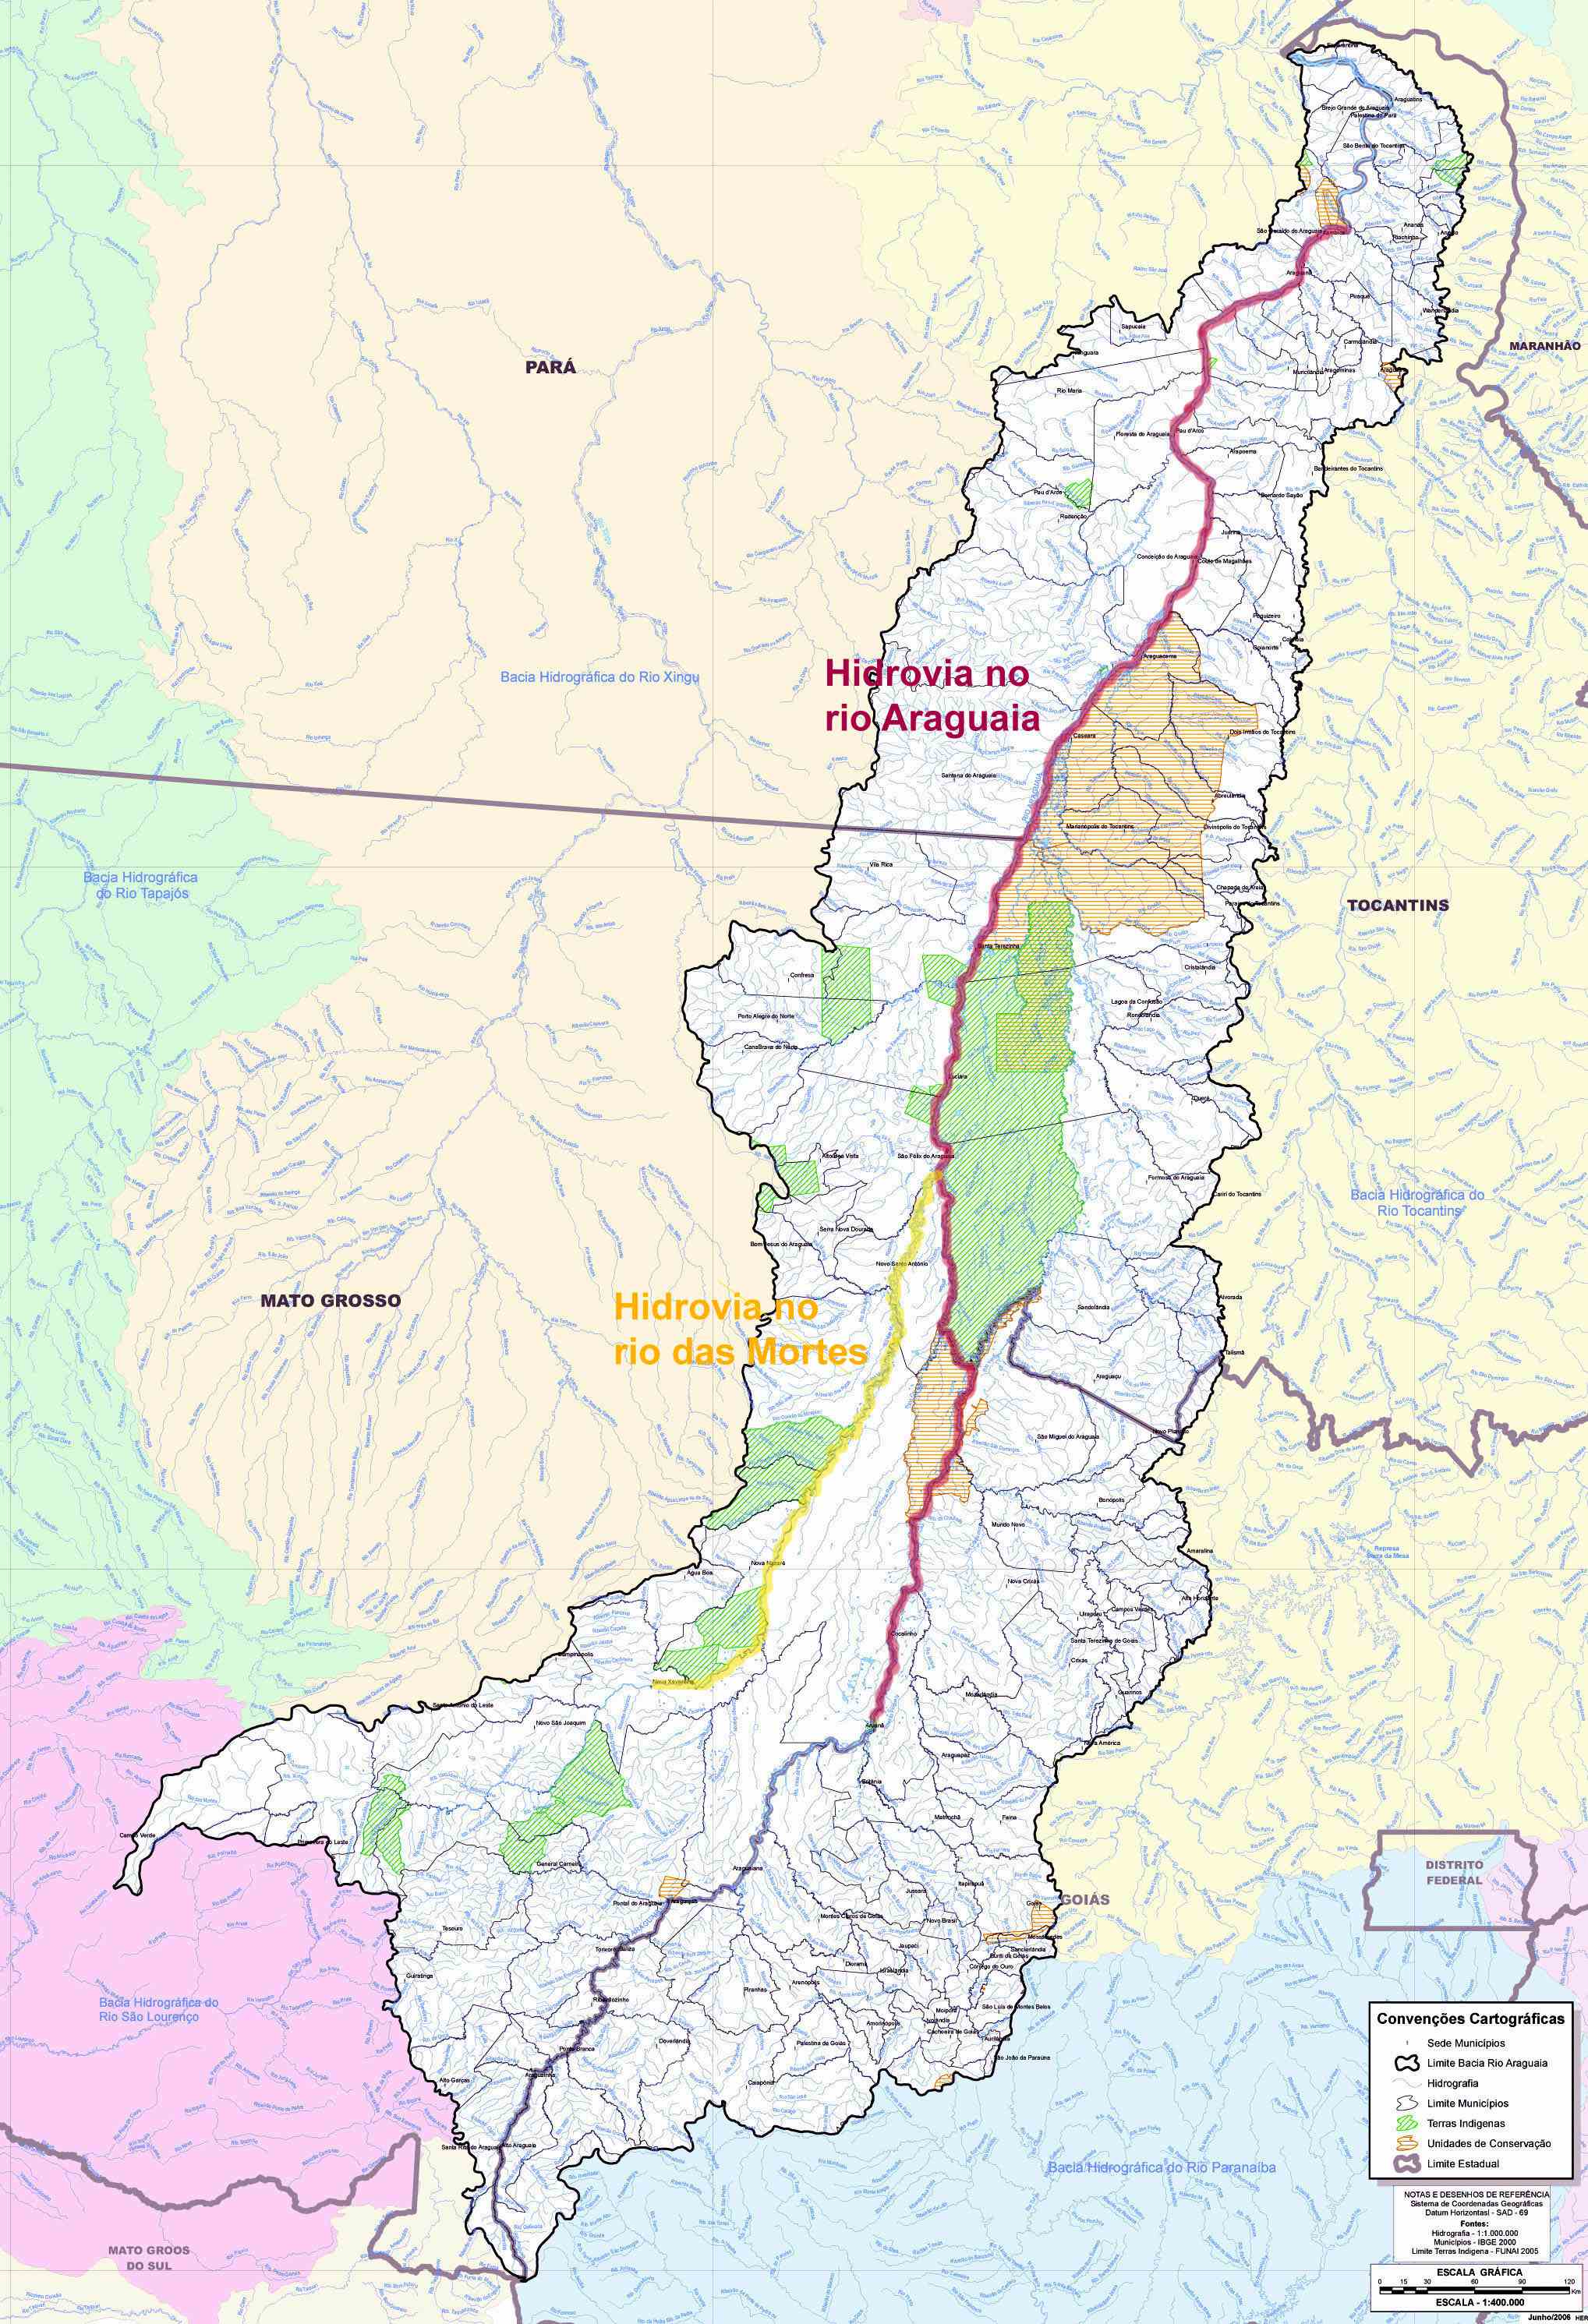  	Trechos projetados para as hidrovias nos rios das mortes (amarelo) e Araguaia (roxo). Clique e confira em tamanho maior. imagem: ANA / O Eco